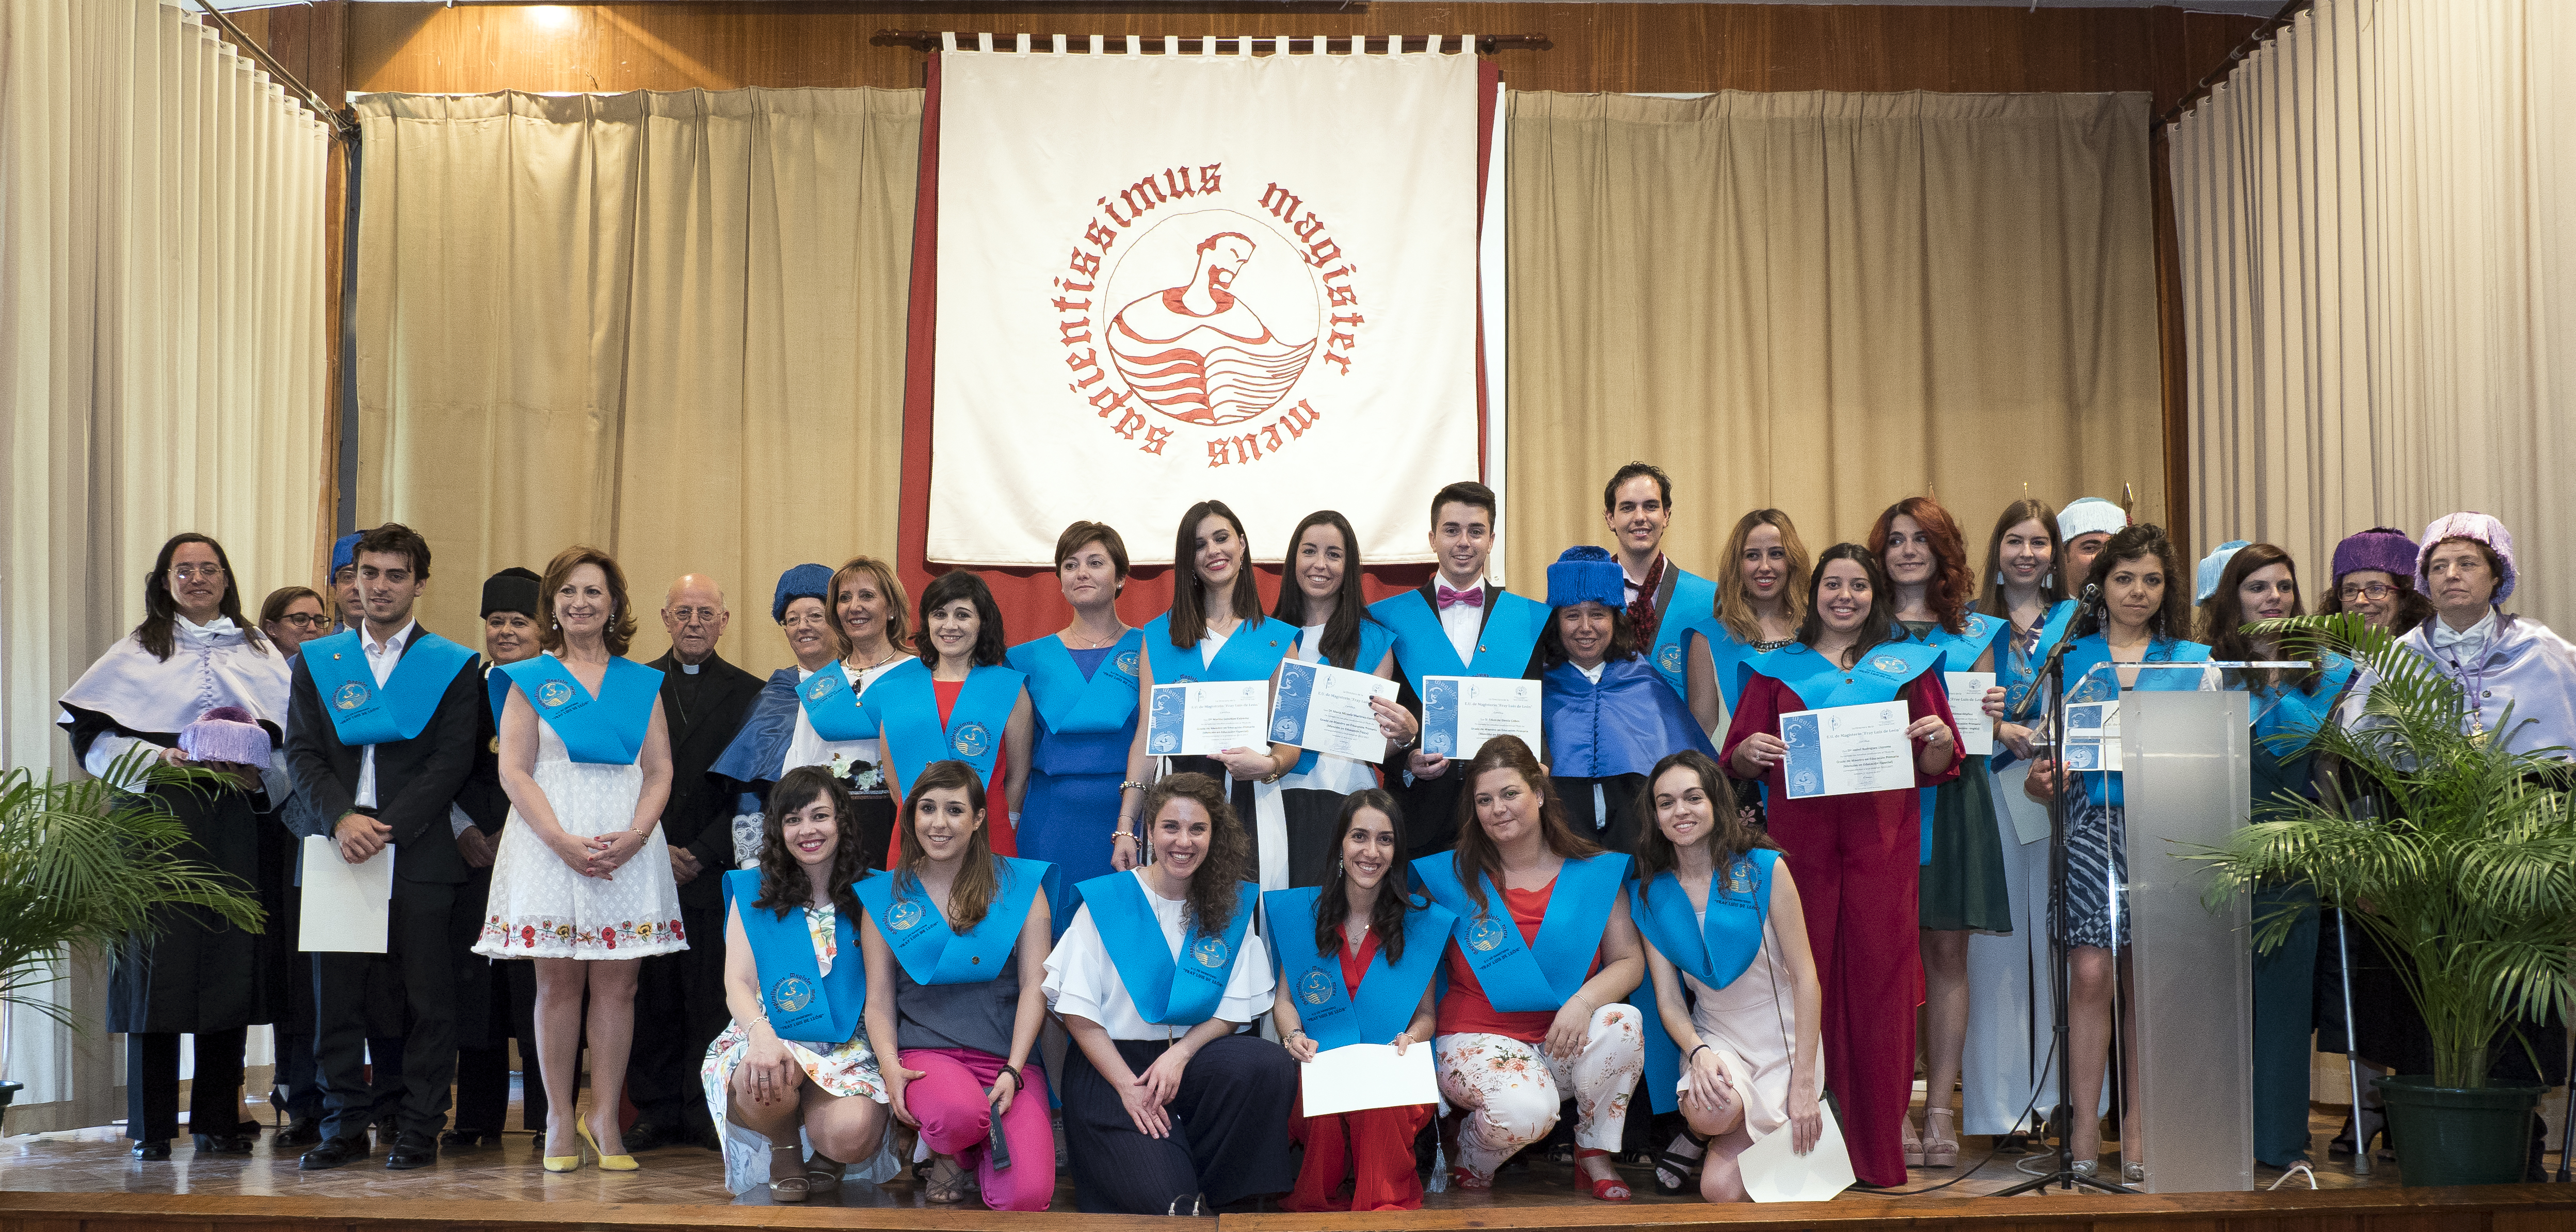 17-6-2017 - Acto de graduación de los alumnos del Grado en Educación Infantil y del Grado en Educación Primaria de la EUM Fray Luis de León